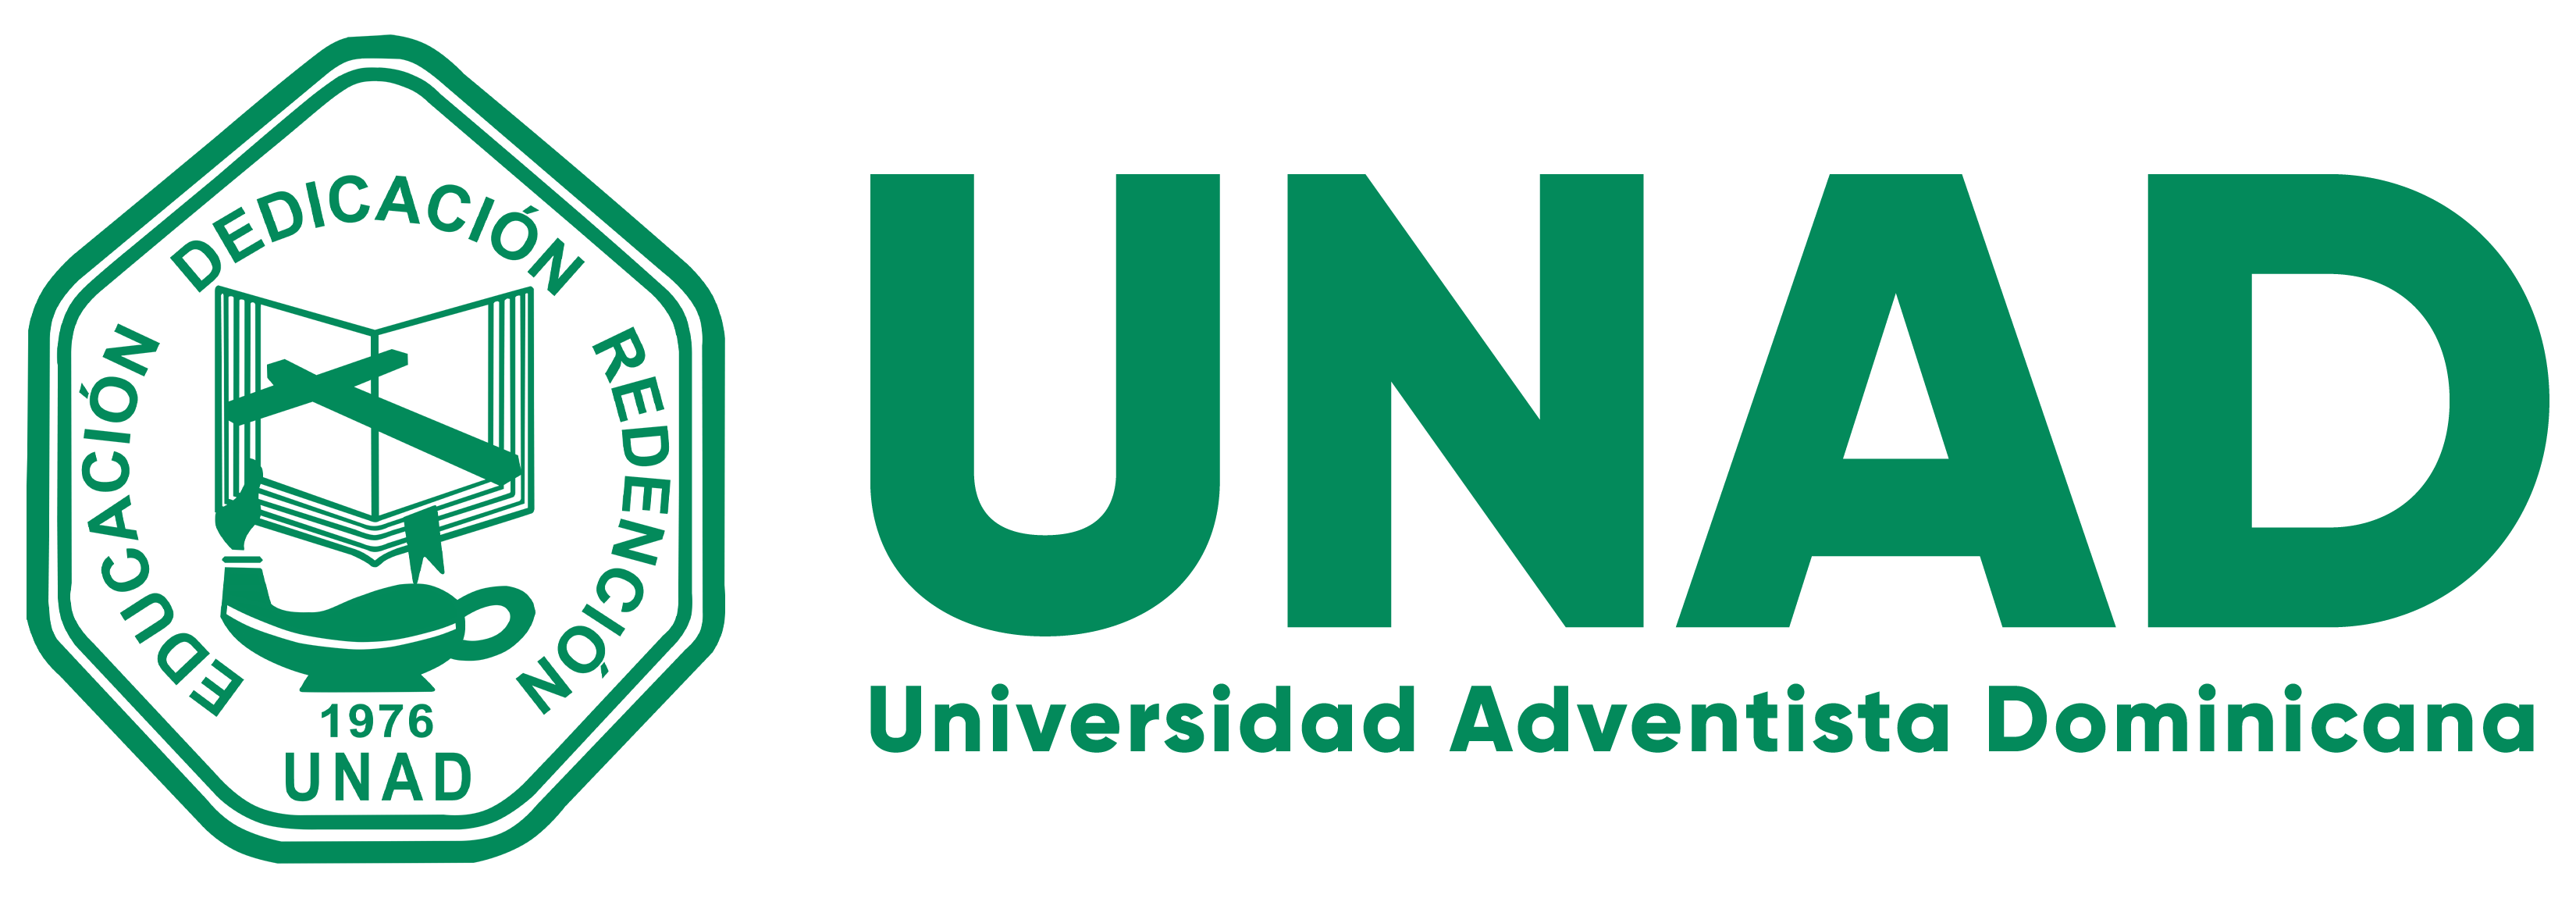 UNAD - Universidad Adventista Dominicana